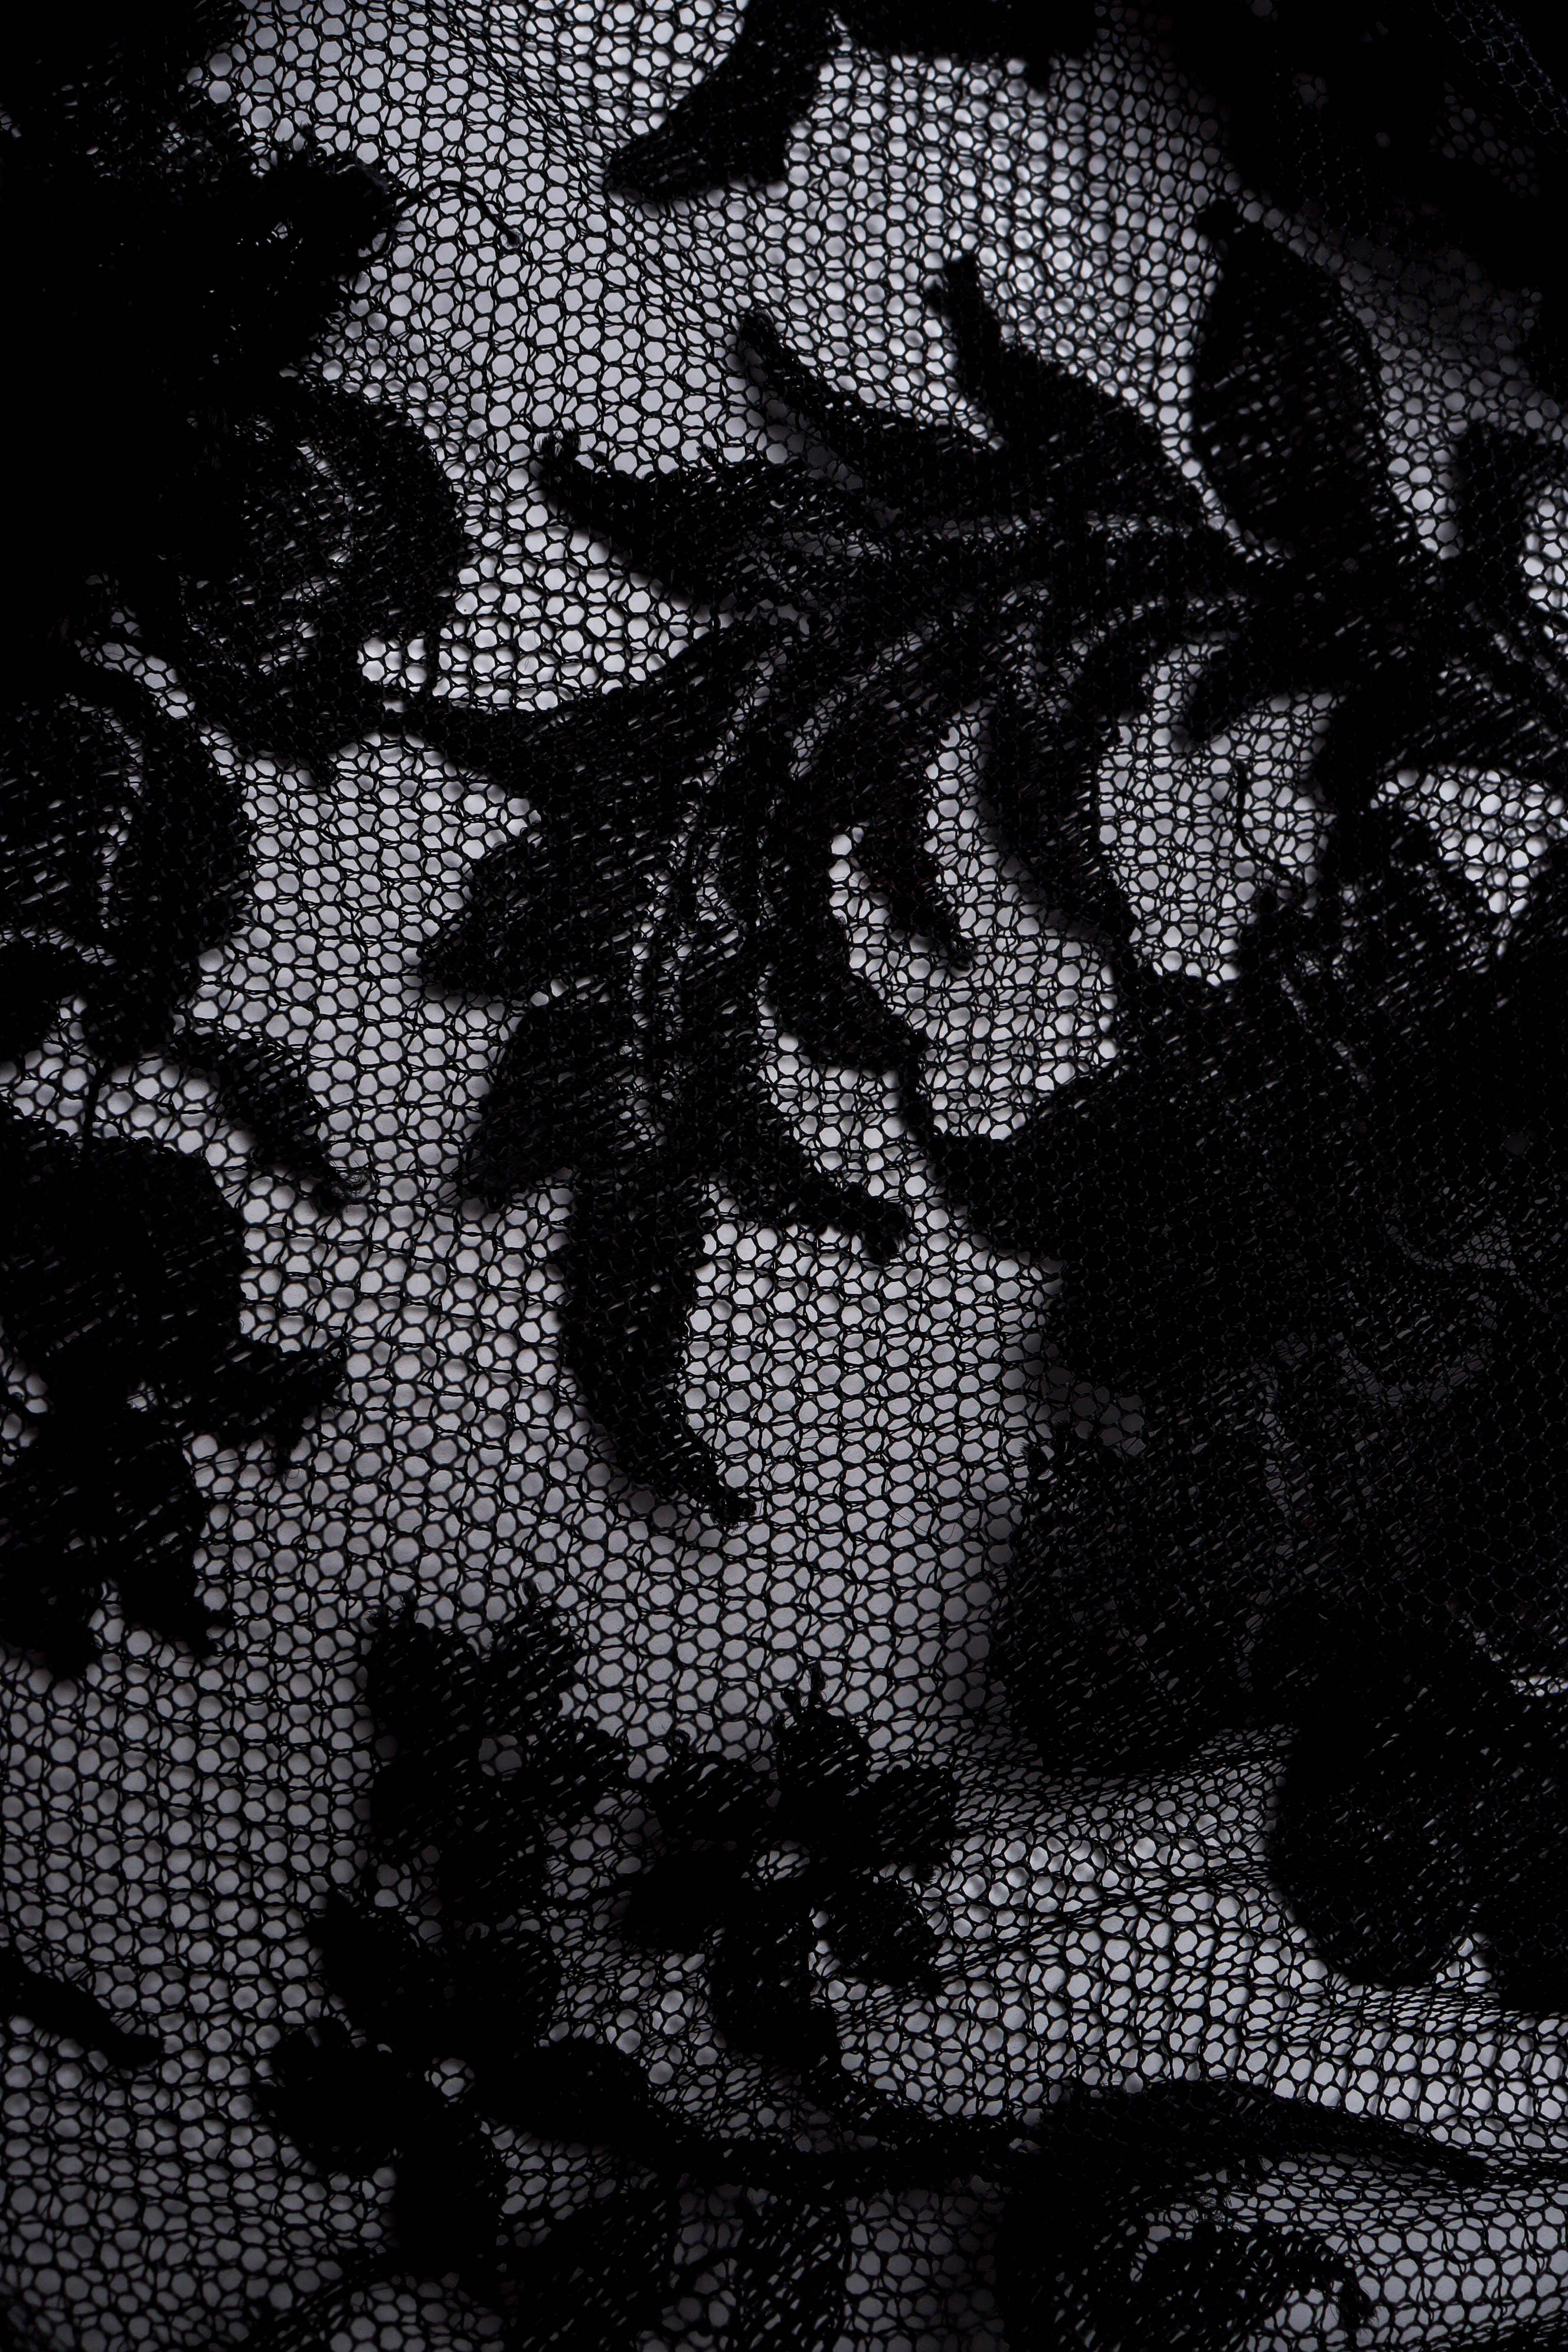 Vintage Emanuel Ungaro Bow Sheer Lace Dress lace floral deatail @ Recess LA